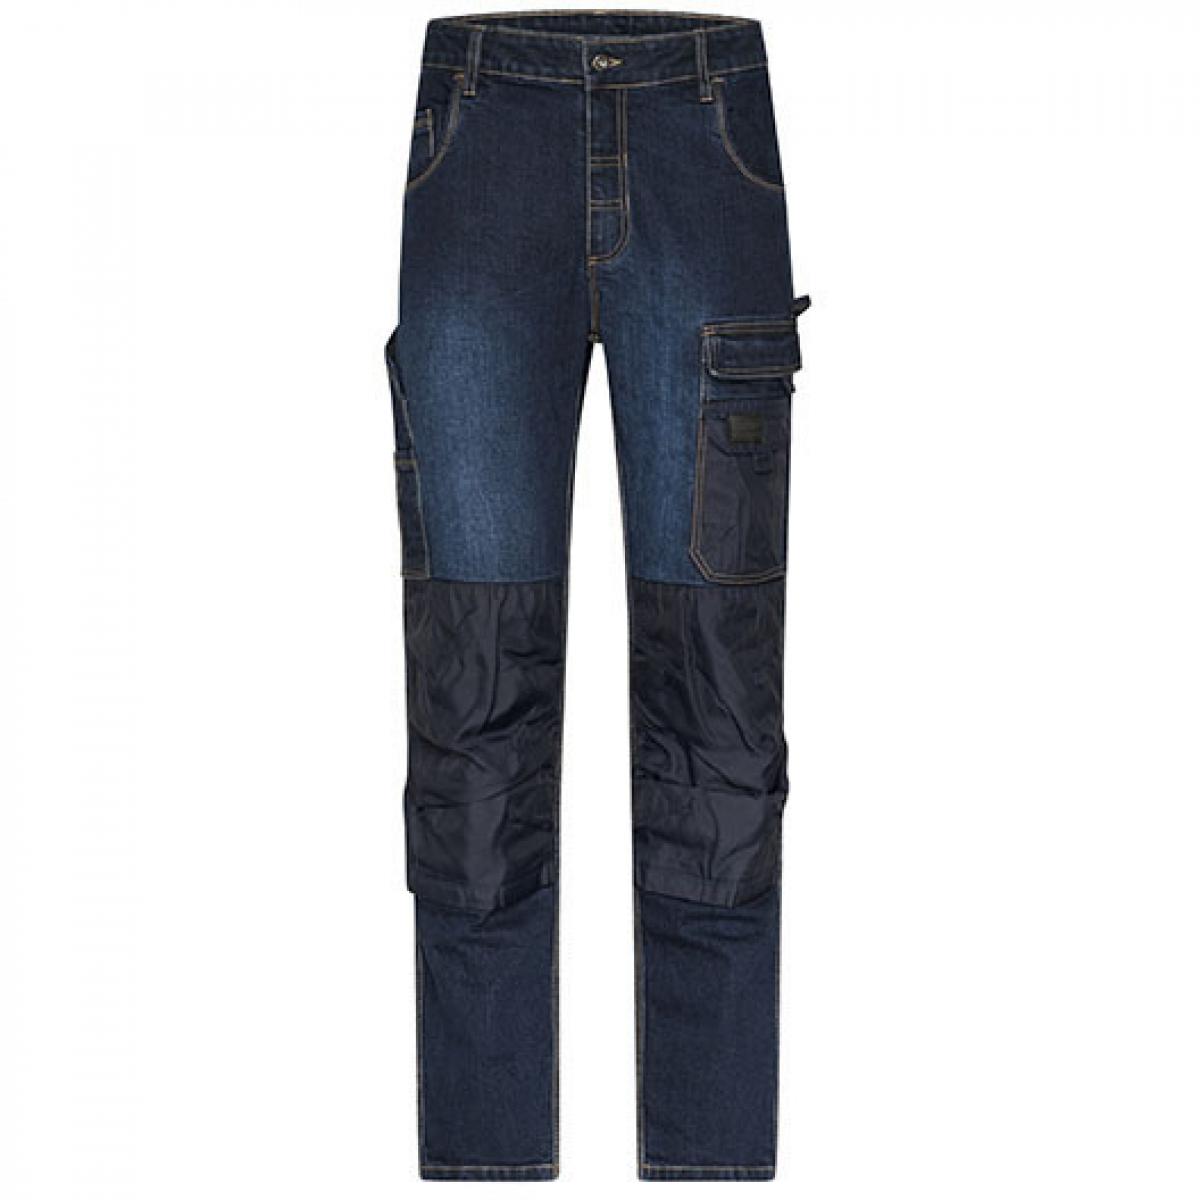 Hersteller: James+Nicholson Herstellernummer: JN875 Artikelbezeichnung: Herren Hose, Workwear Stretch-Jeans Farbe: Blue Denim